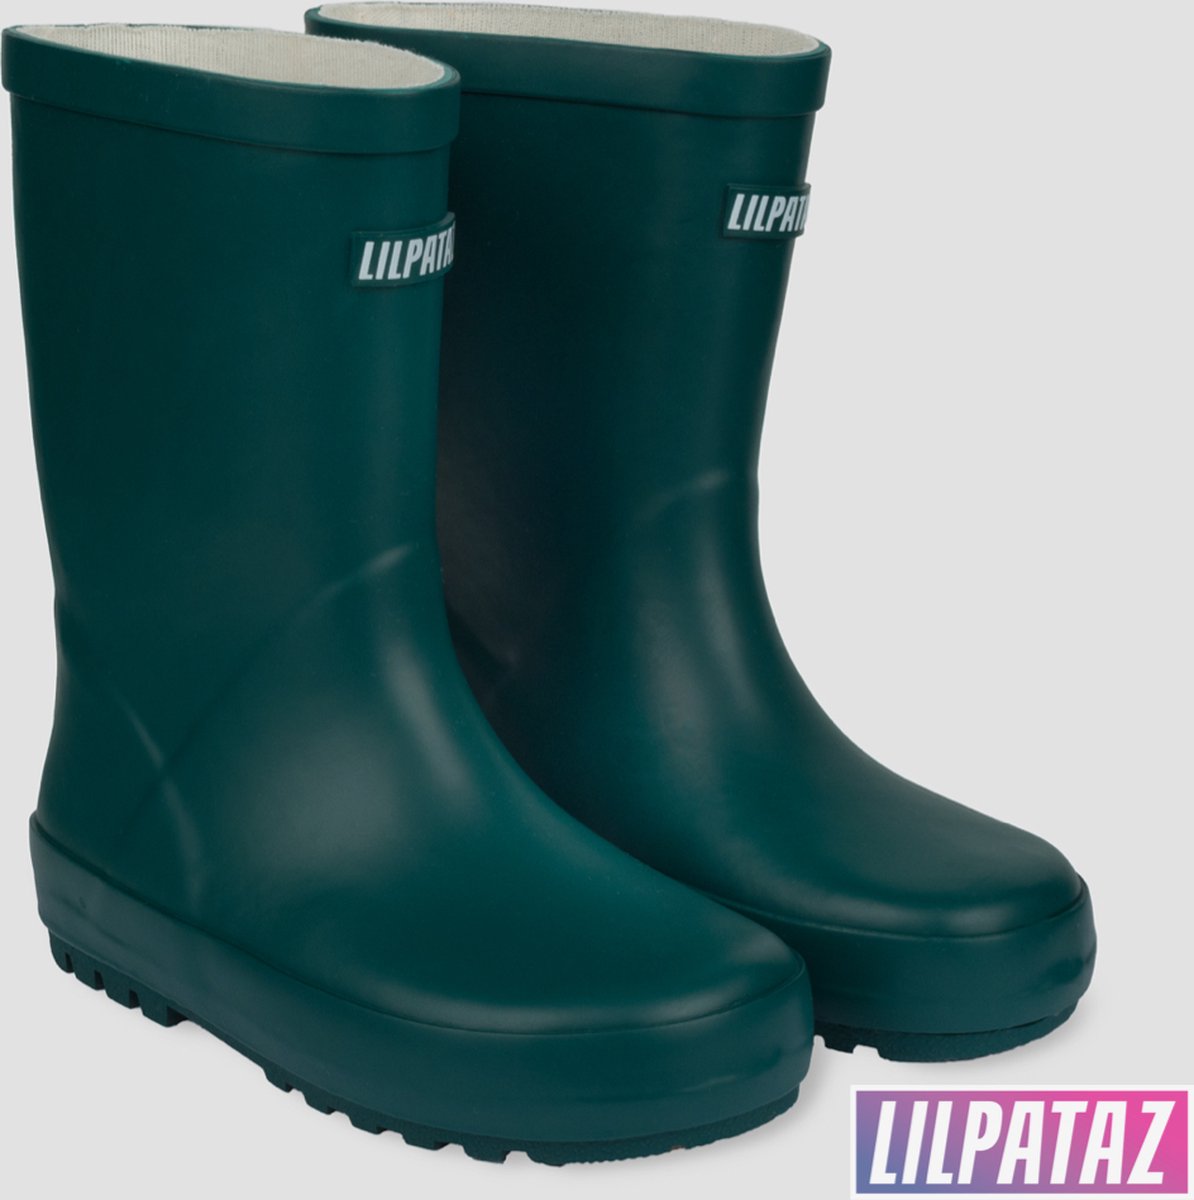 LilPataz Rainboot - Regenlaars kinderen - Jongens Meisjes - Groen - kinder regenlaarzen - Maat 22